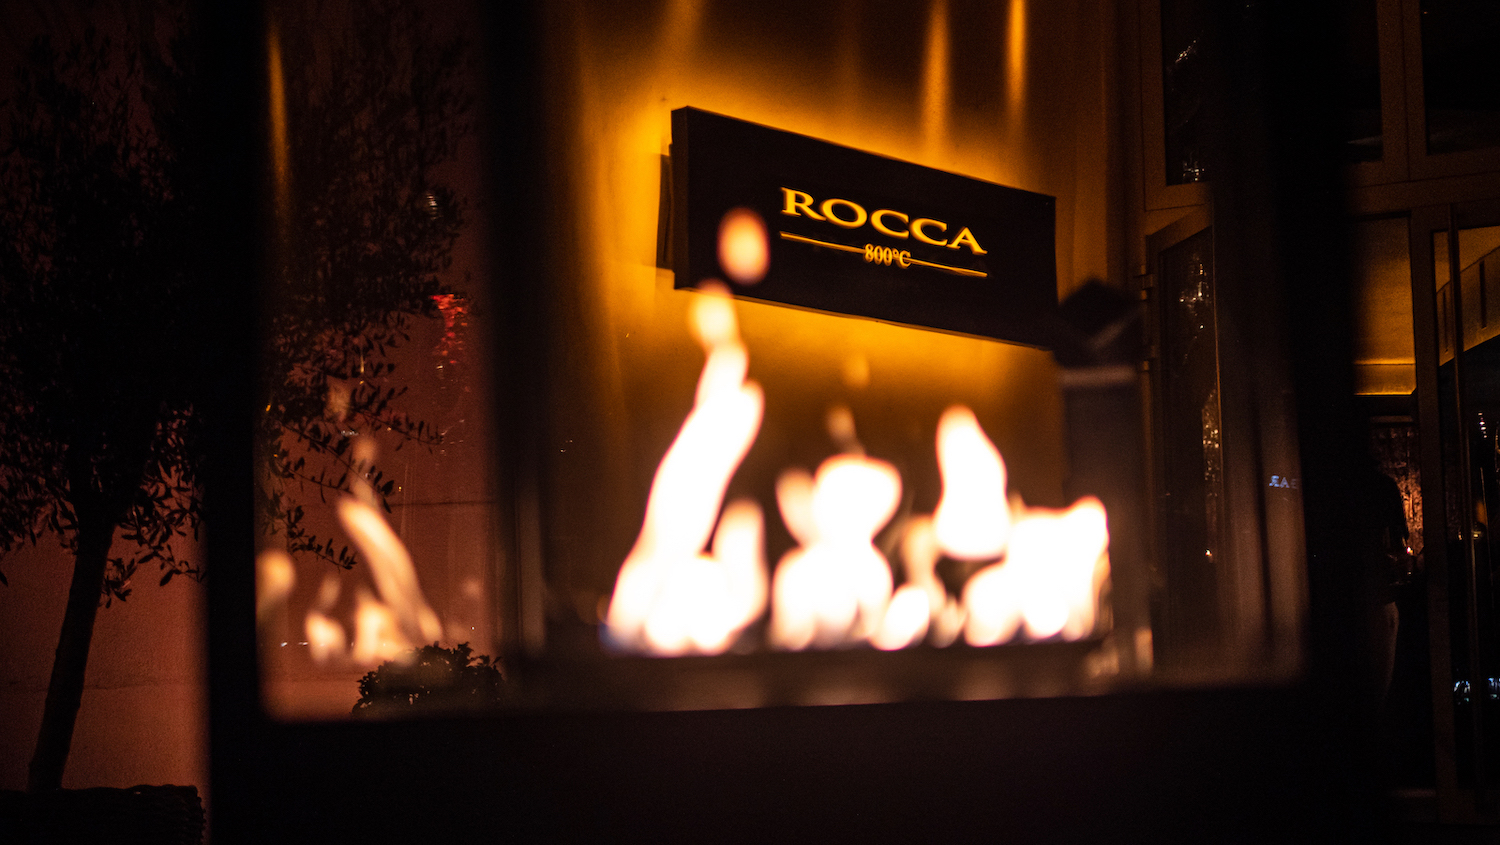 Restaurant und Steakhouse Rocca 800°C Logo über brennenden Kamin in Düsseldorf am Medienhafen